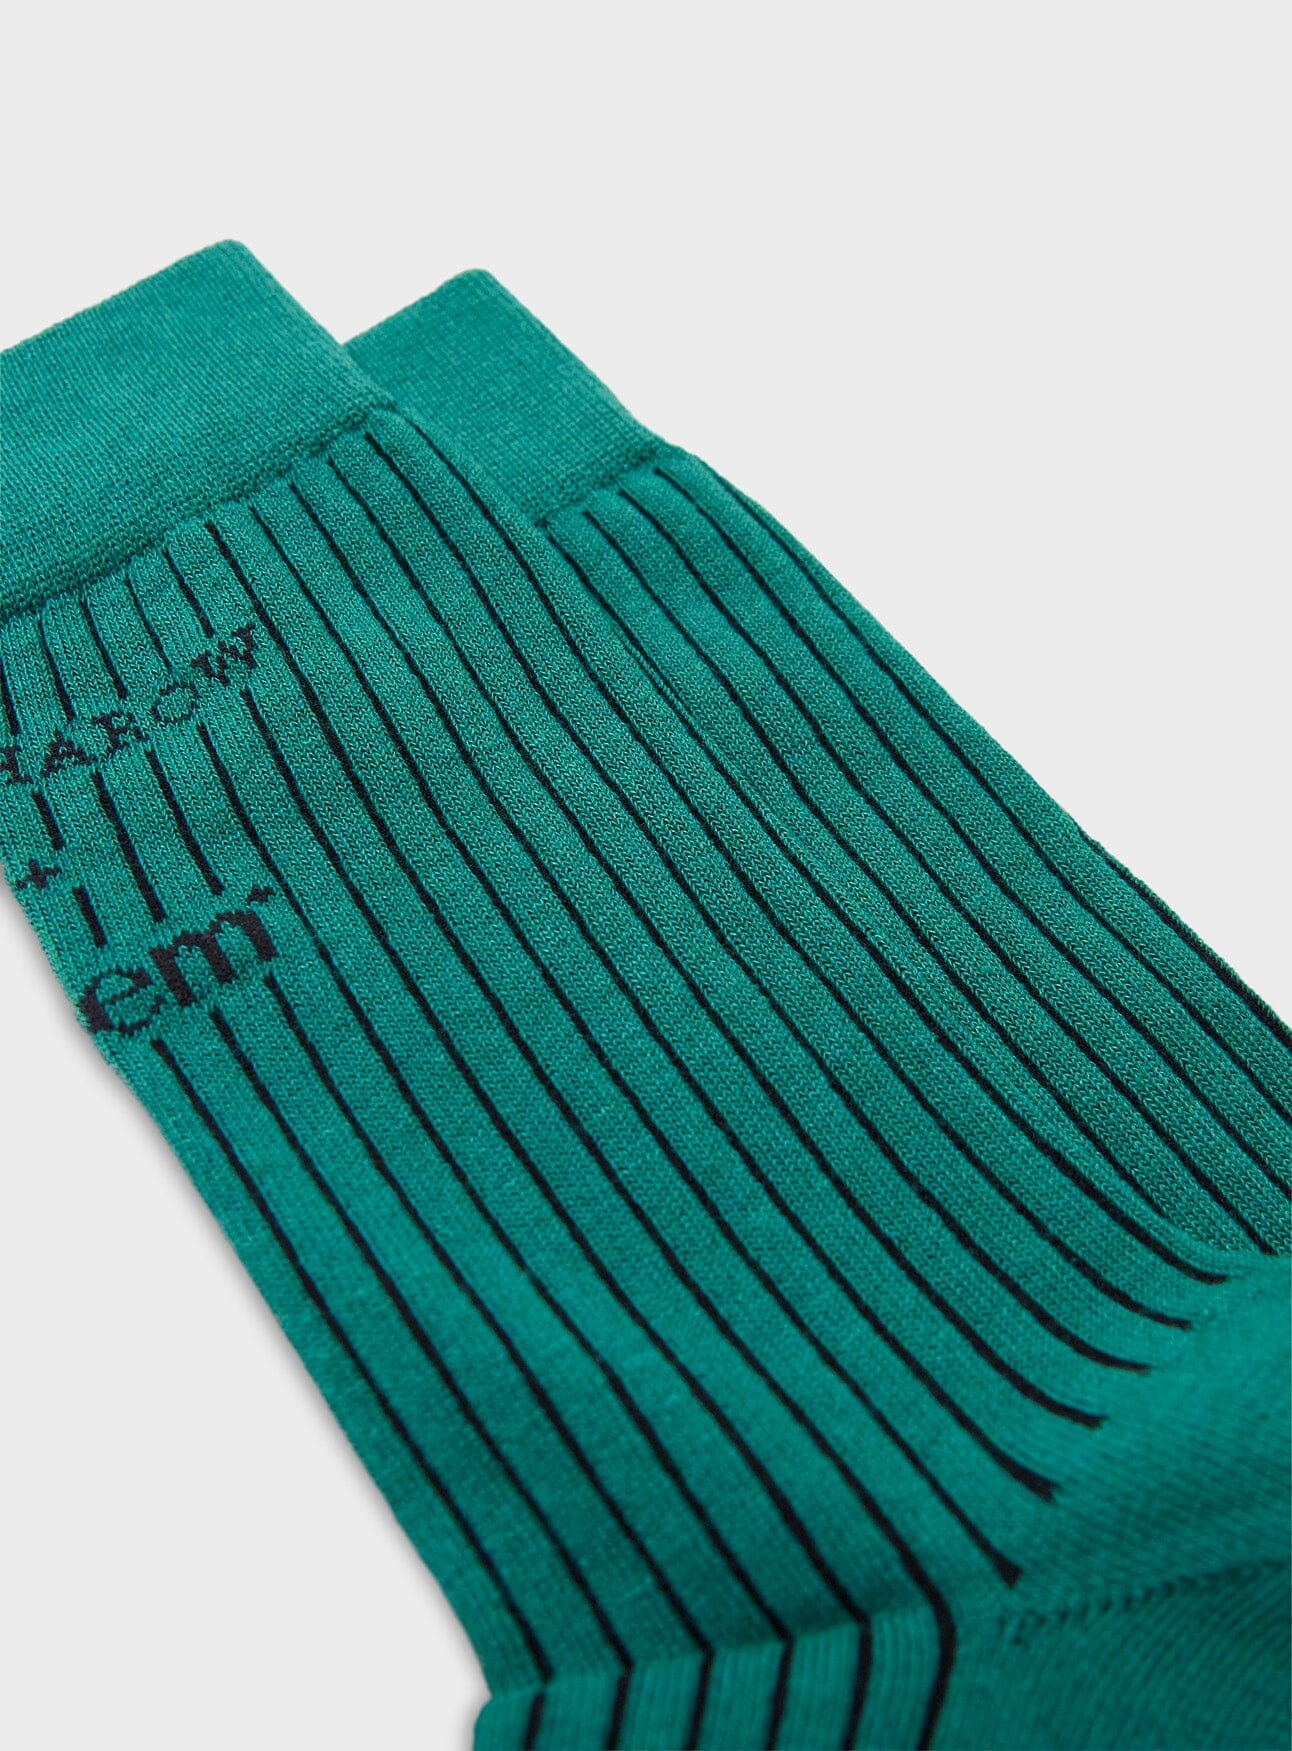 Recycled Men's Socks - Green